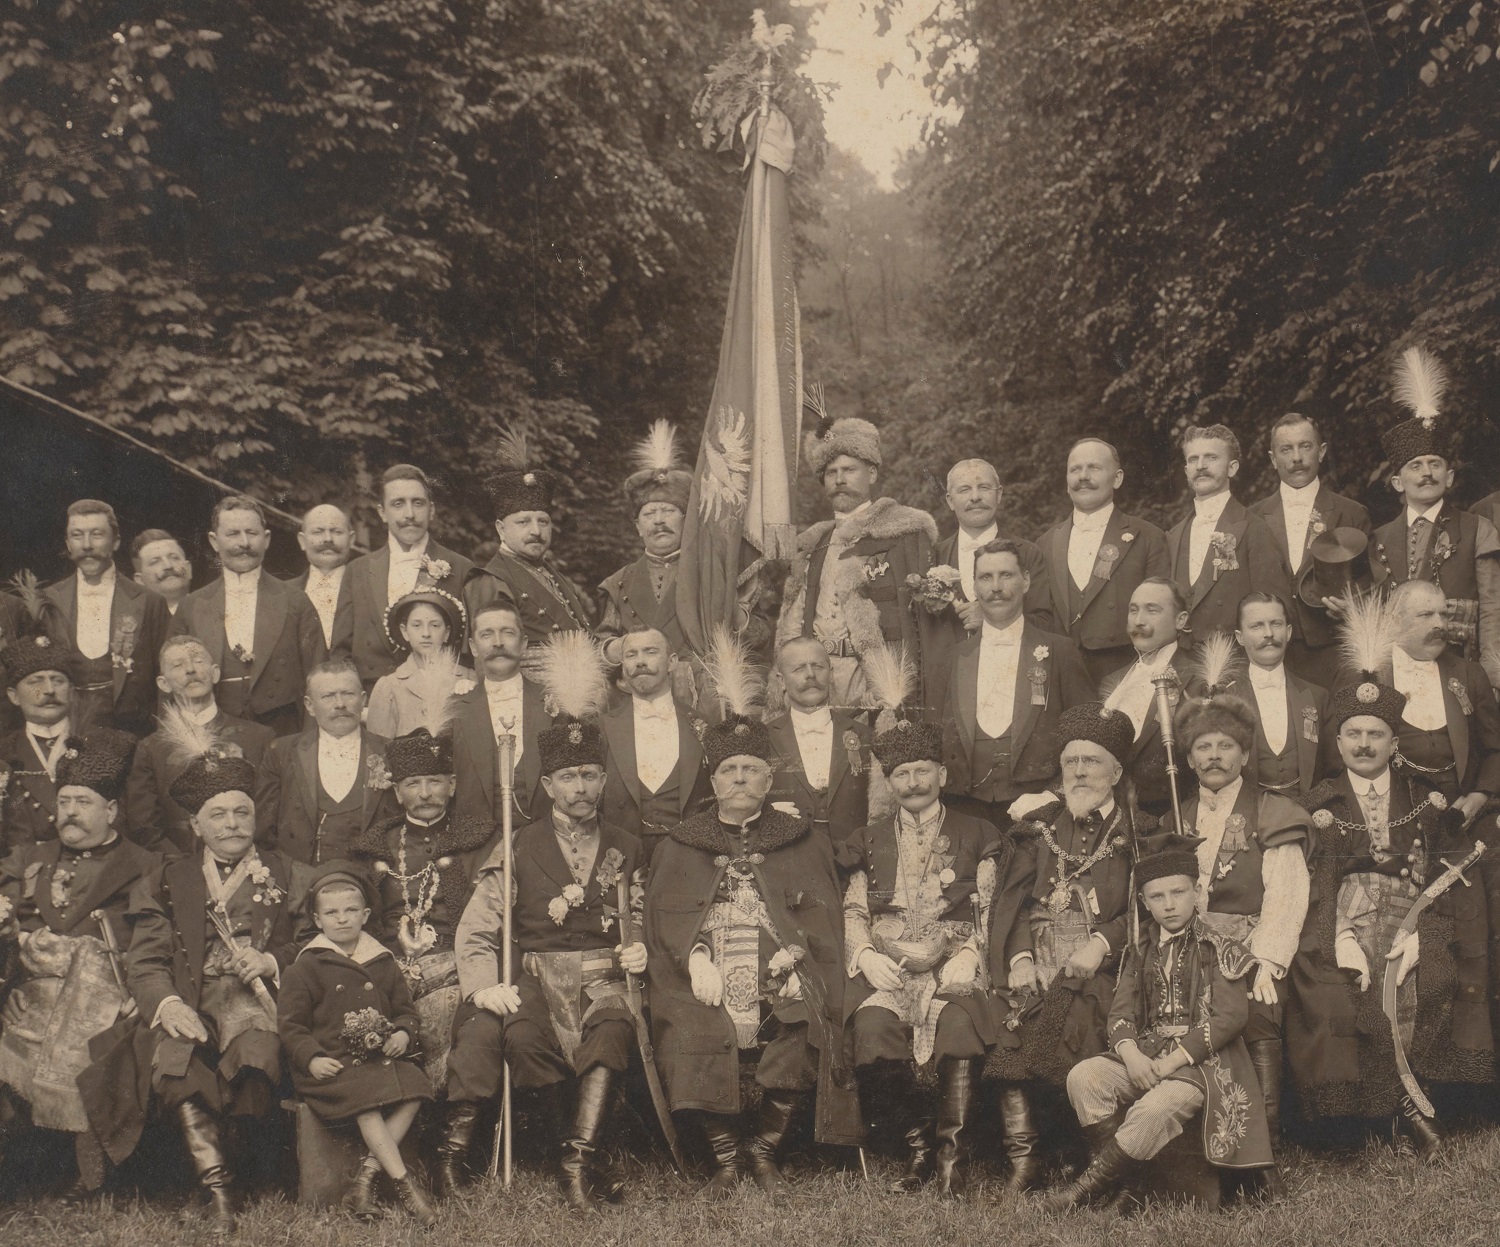 Групове фото зі Стрільниці у 1913 році (фрагмент). У центрі сидить президент Львова Юзеф Нойман, а тогорічний Курковий король зміщений убік